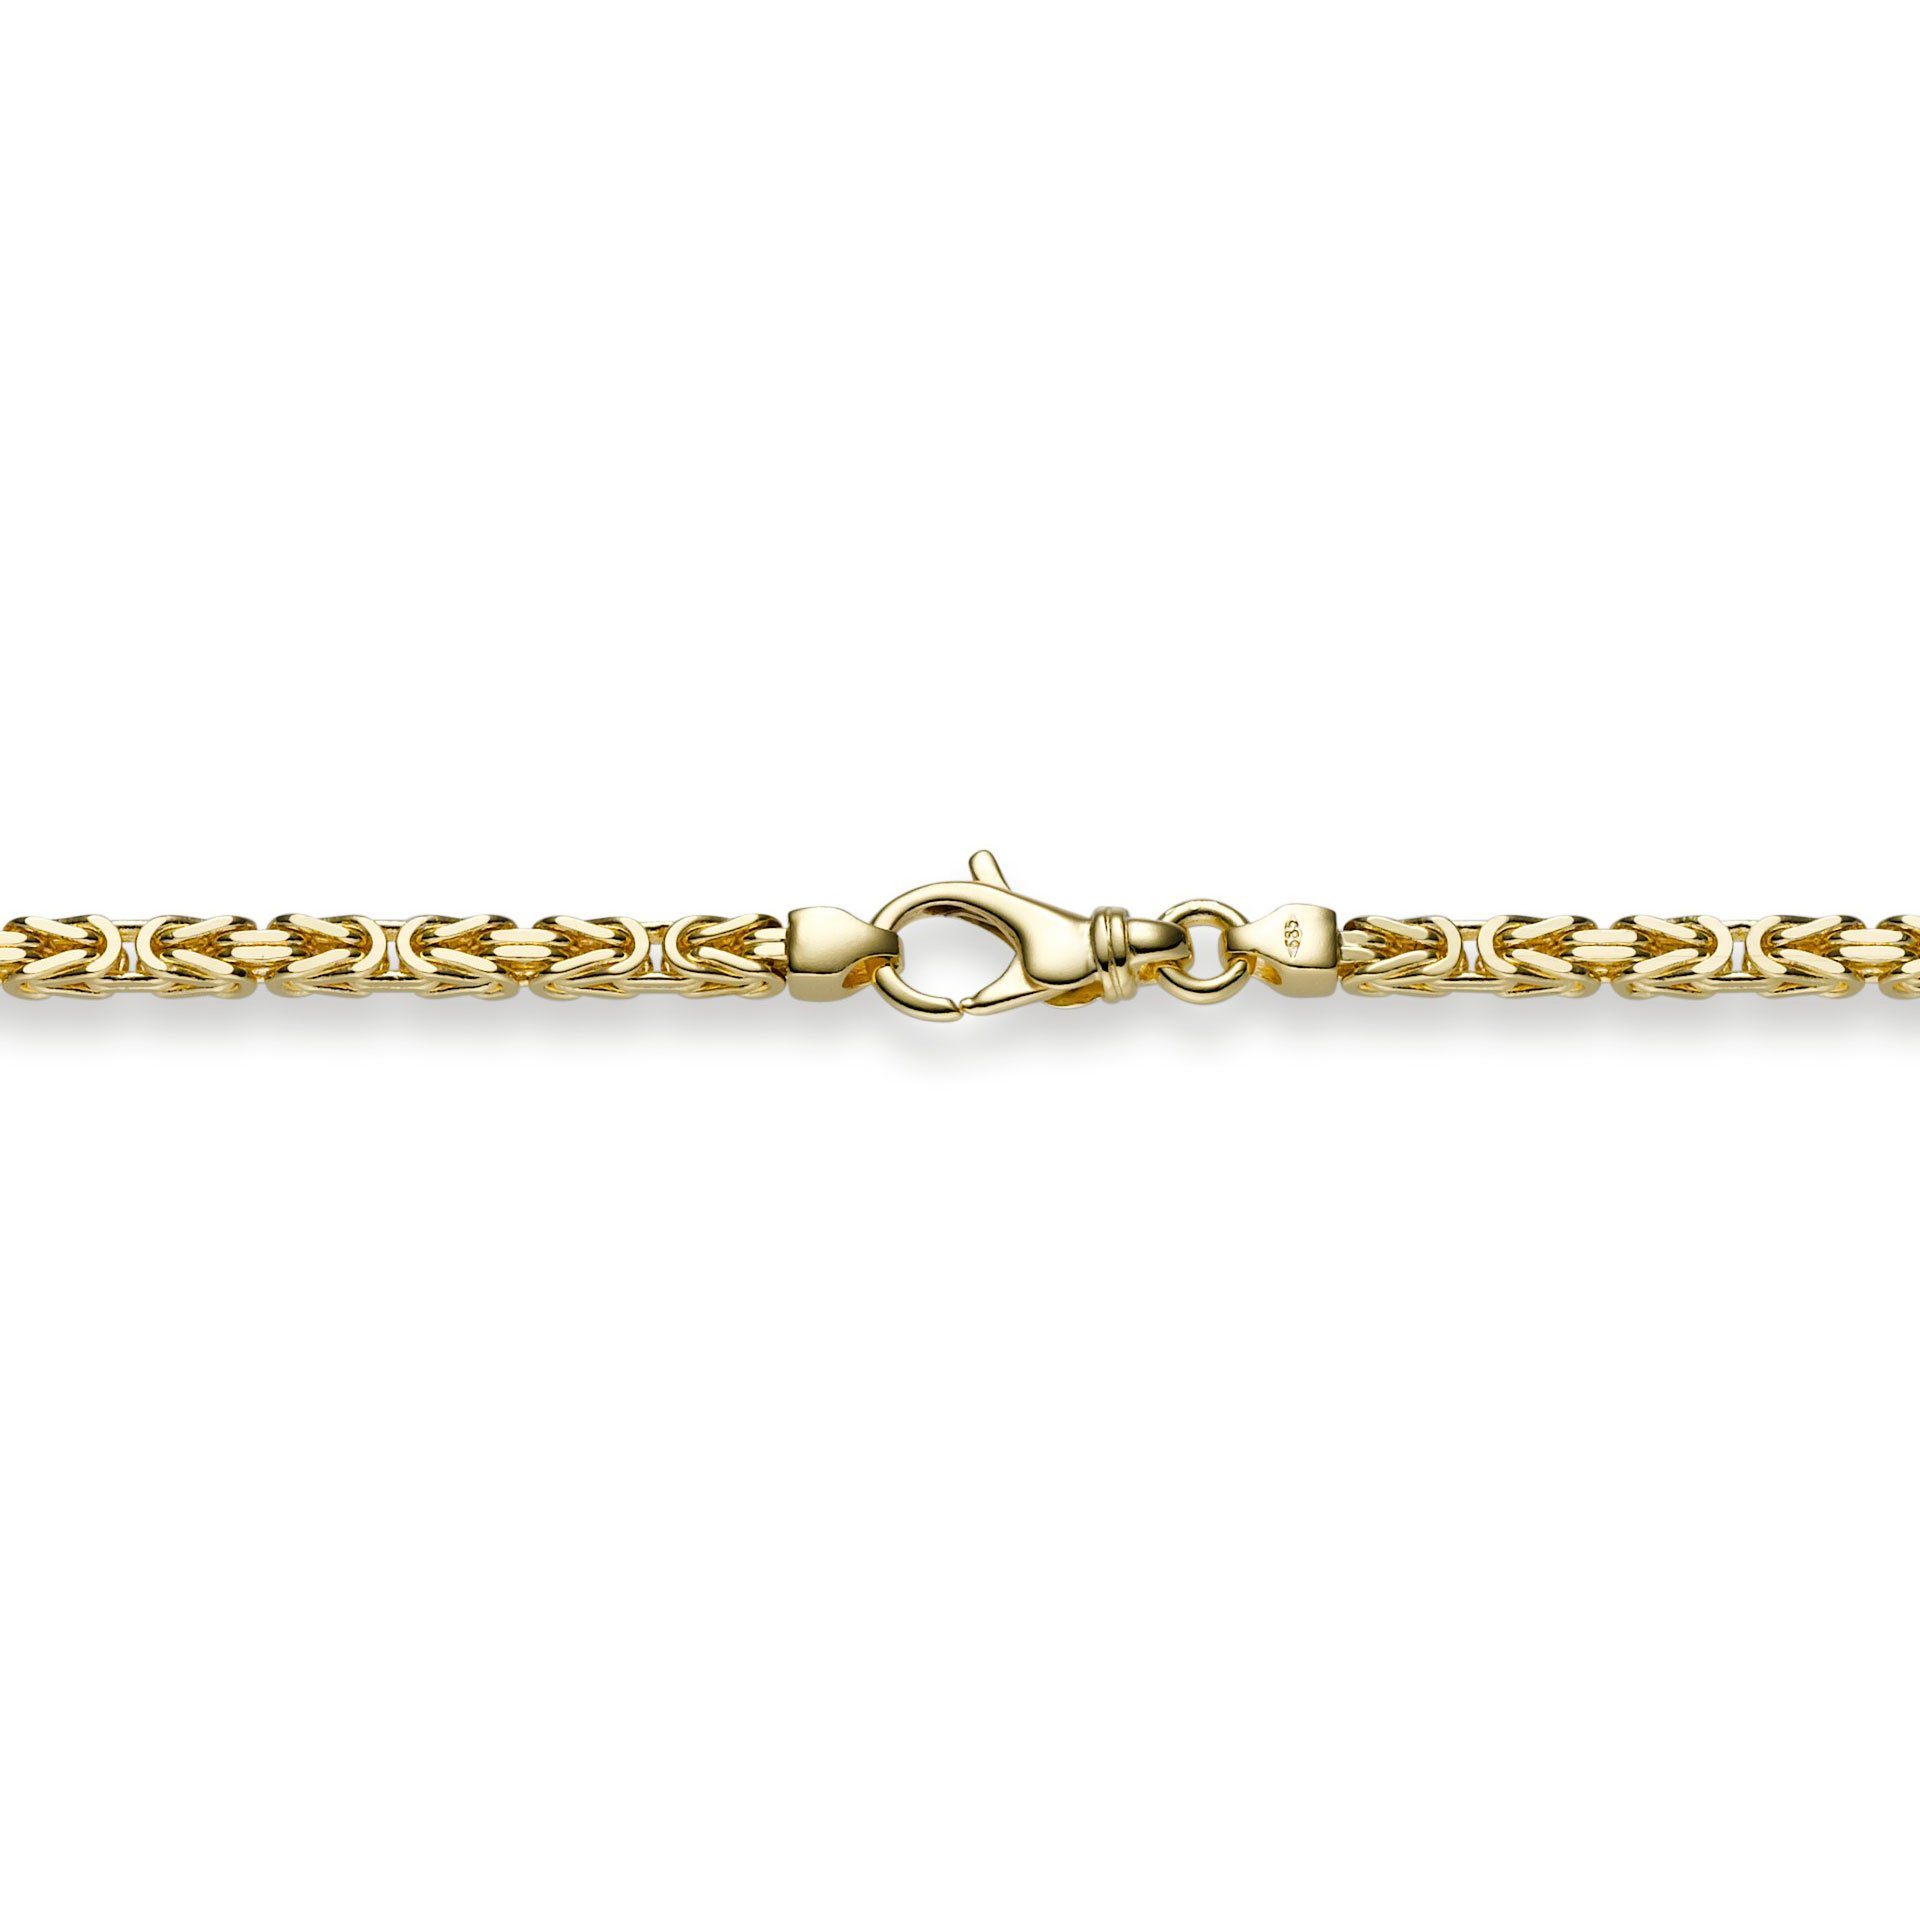 HOPLO Goldarmband Goldkette Königskette Länge 19cm - Breite 3,0mm - 750-18 Karat Gold